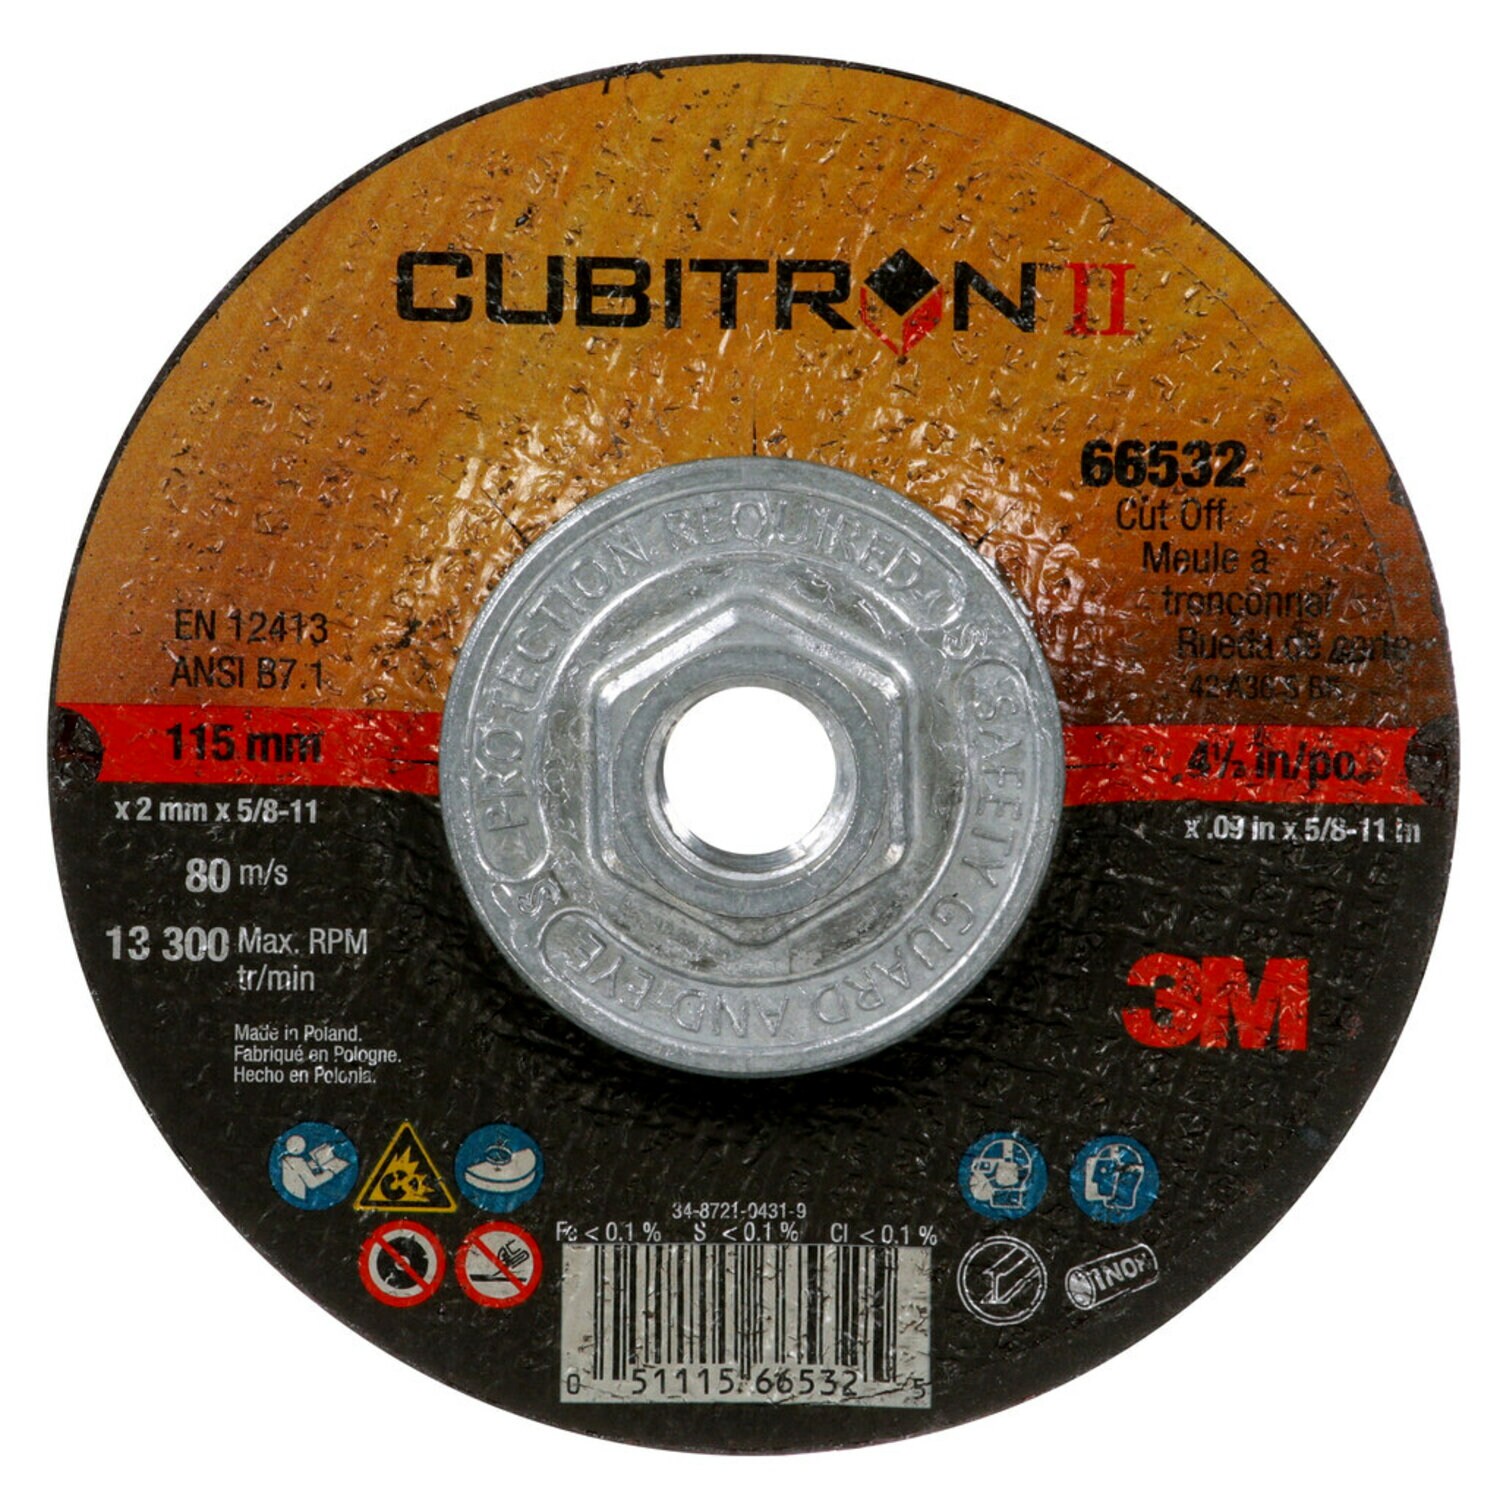 7100247111 - 3M Cubitron II Cut-Off Wheel, 66532, Type 27 Quick Change, 4.5 in x
.09 in x 5/8"-11 in, 25/Carton, 50 ea/Case